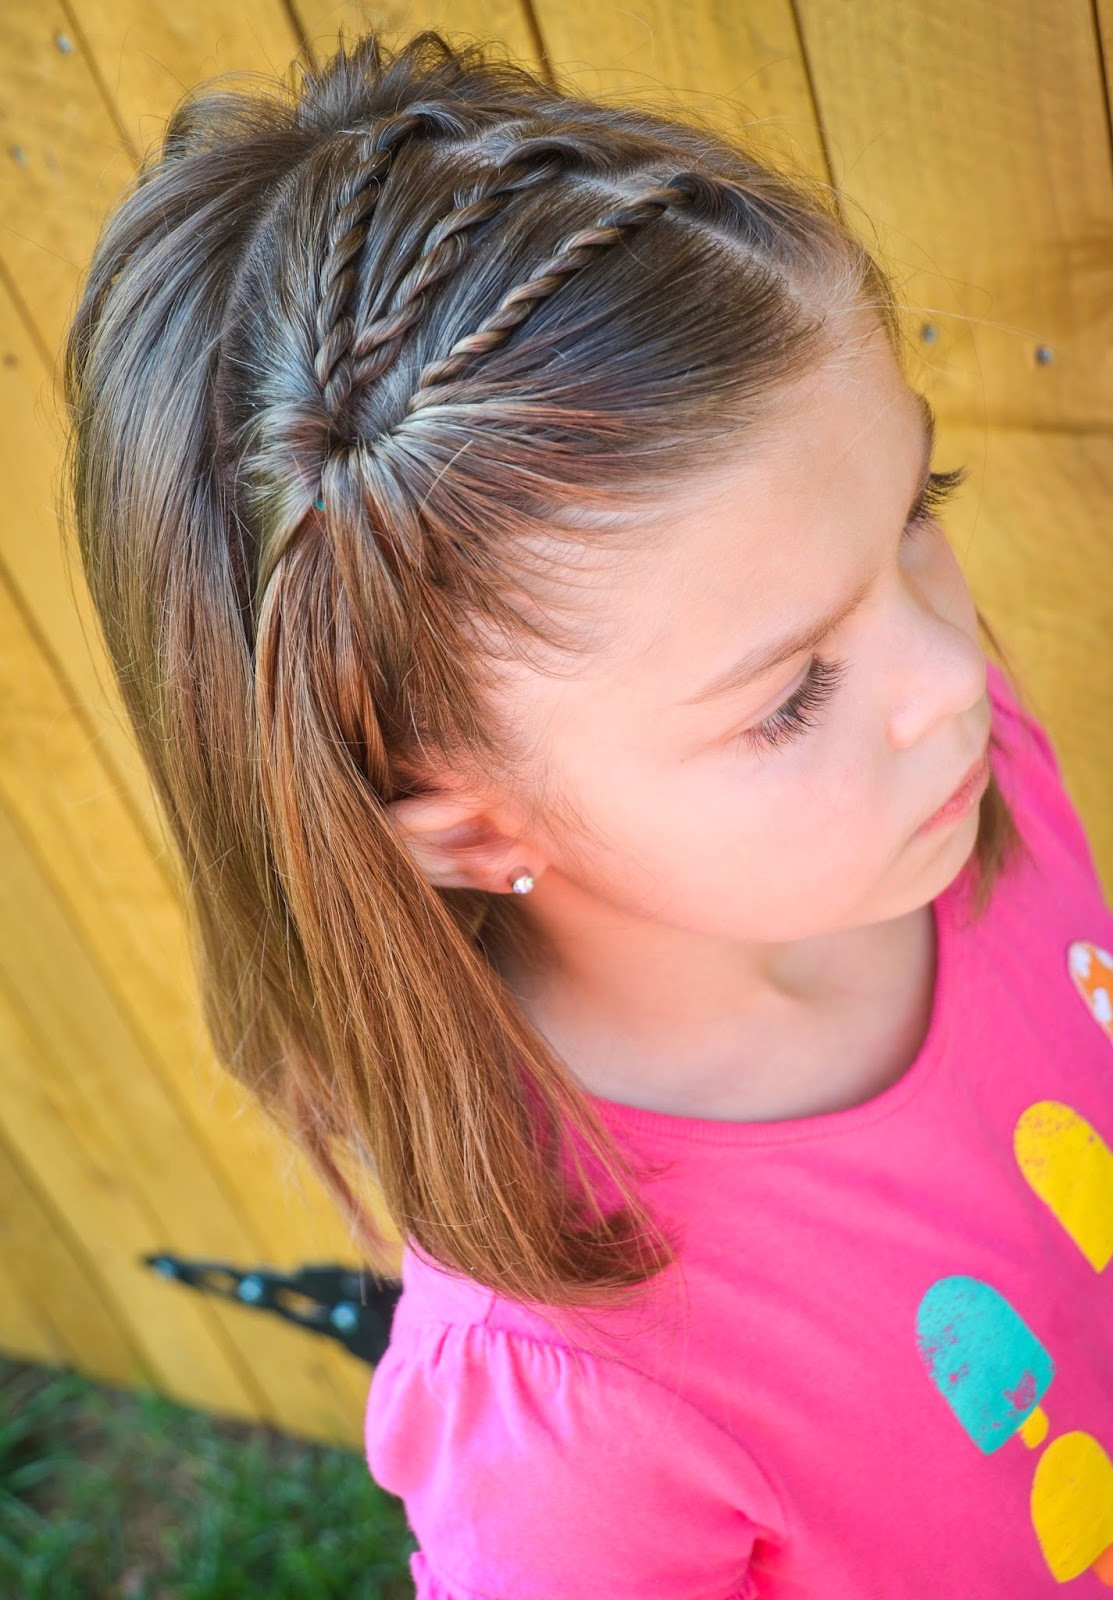 Little Girl Hairstyles For Short Hair Pinterest
 25 Little Girl Hairstyles you can do YOURSELF